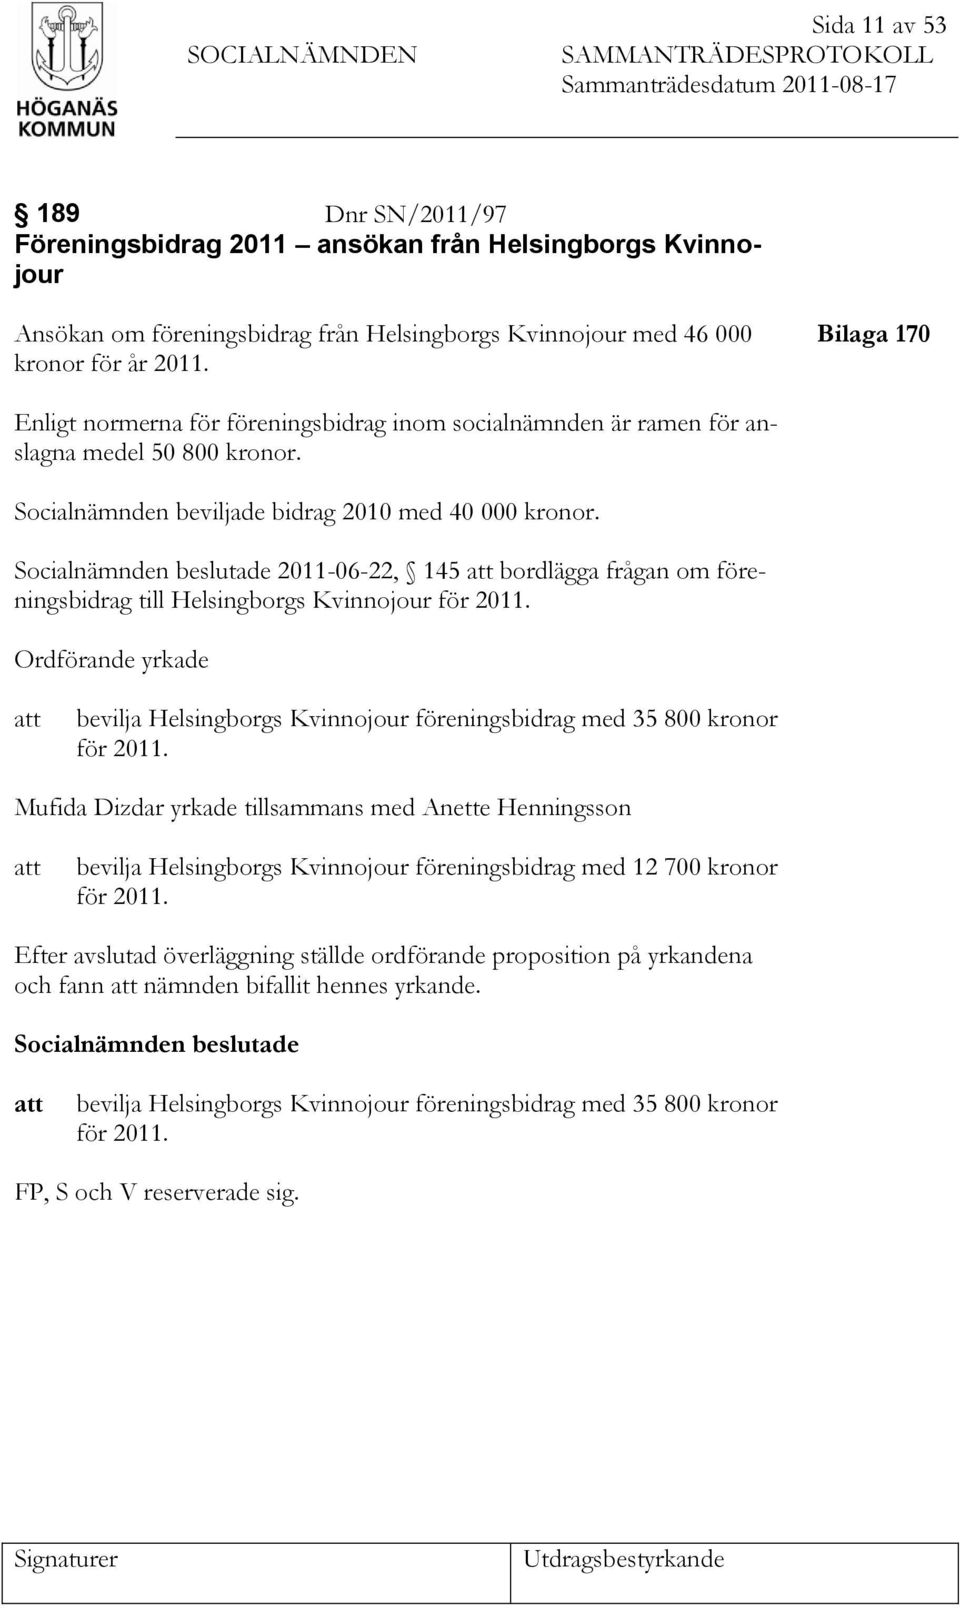 Socialnämnden beviljade bidrag 2010 med 40 000 kronor. Socialnämnden beslutade 2011-06-22, 145 att bordlägga frågan om föreningsbidrag till Helsingborgs Kvinnojour för 2011.